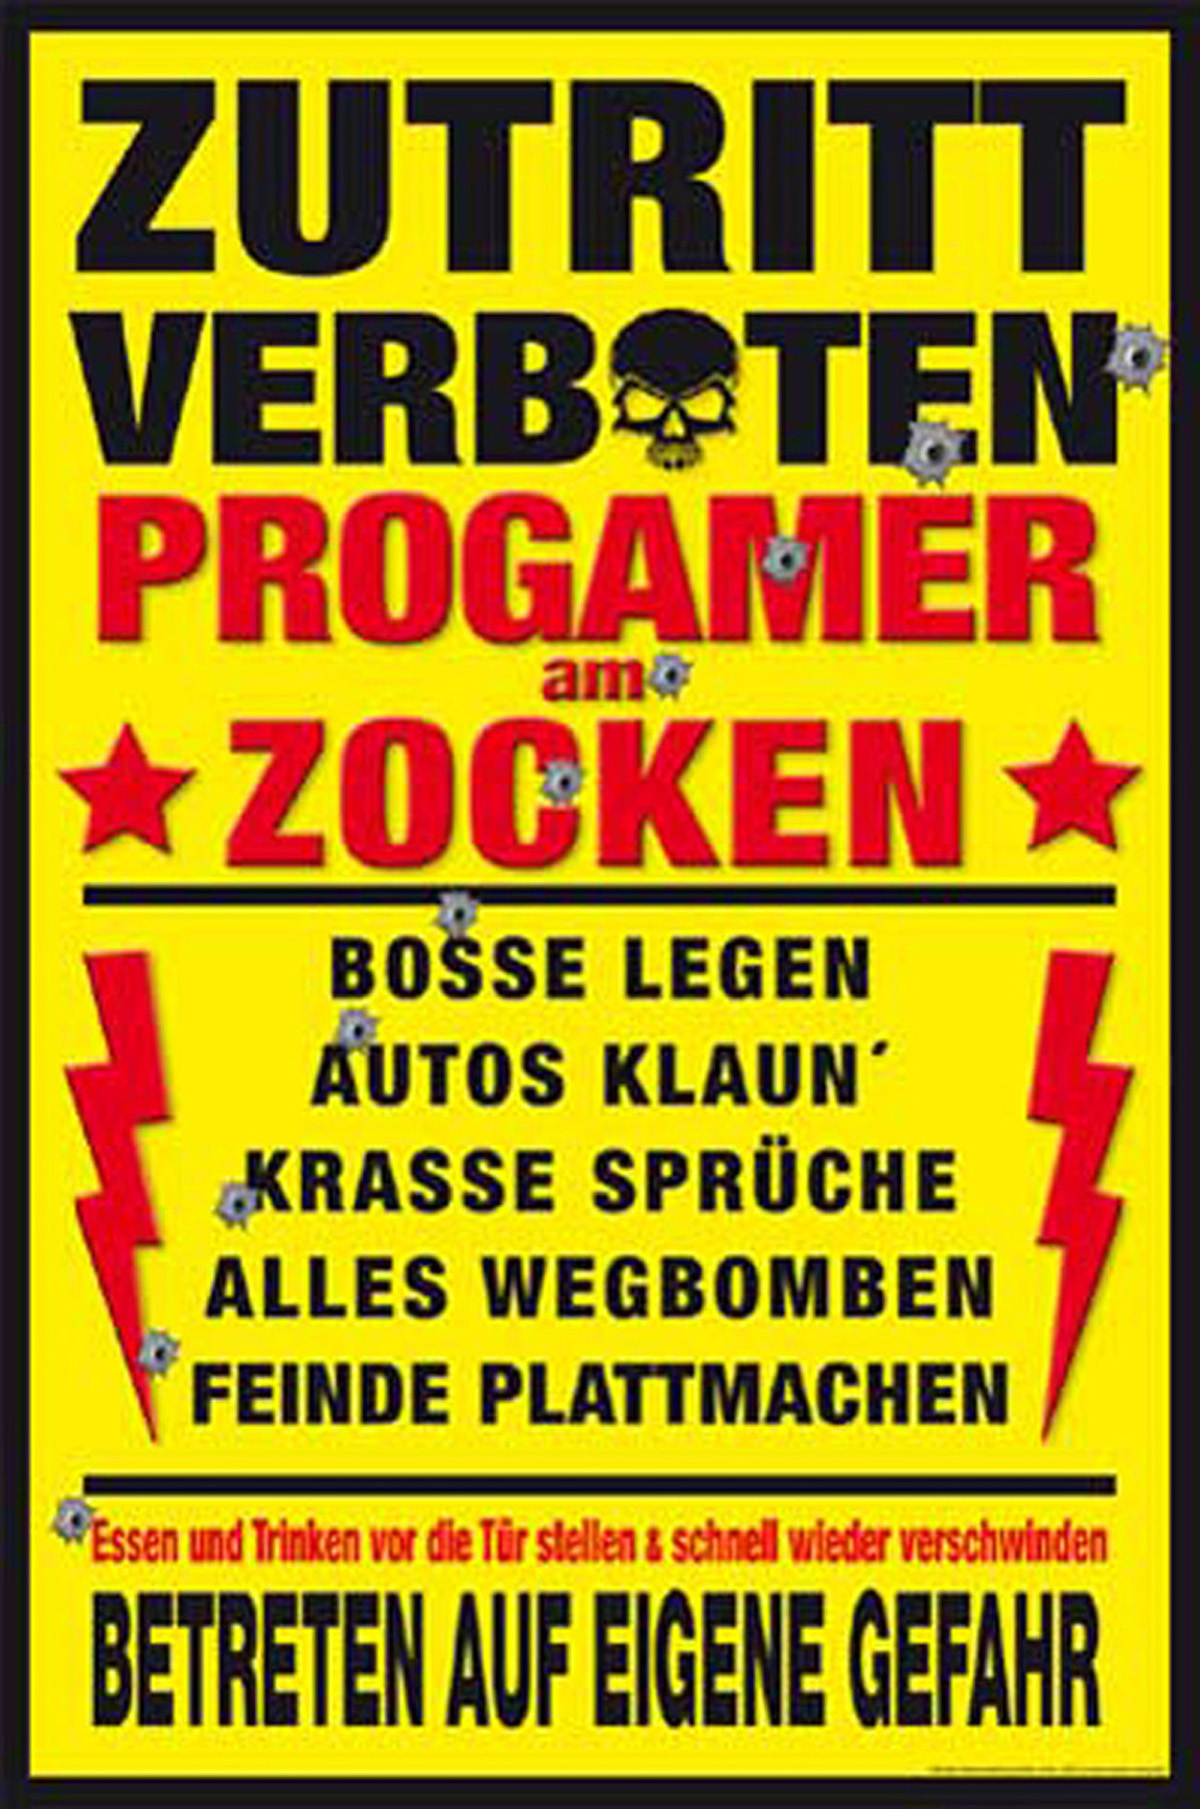 ProGamer Zocken am Gaming -